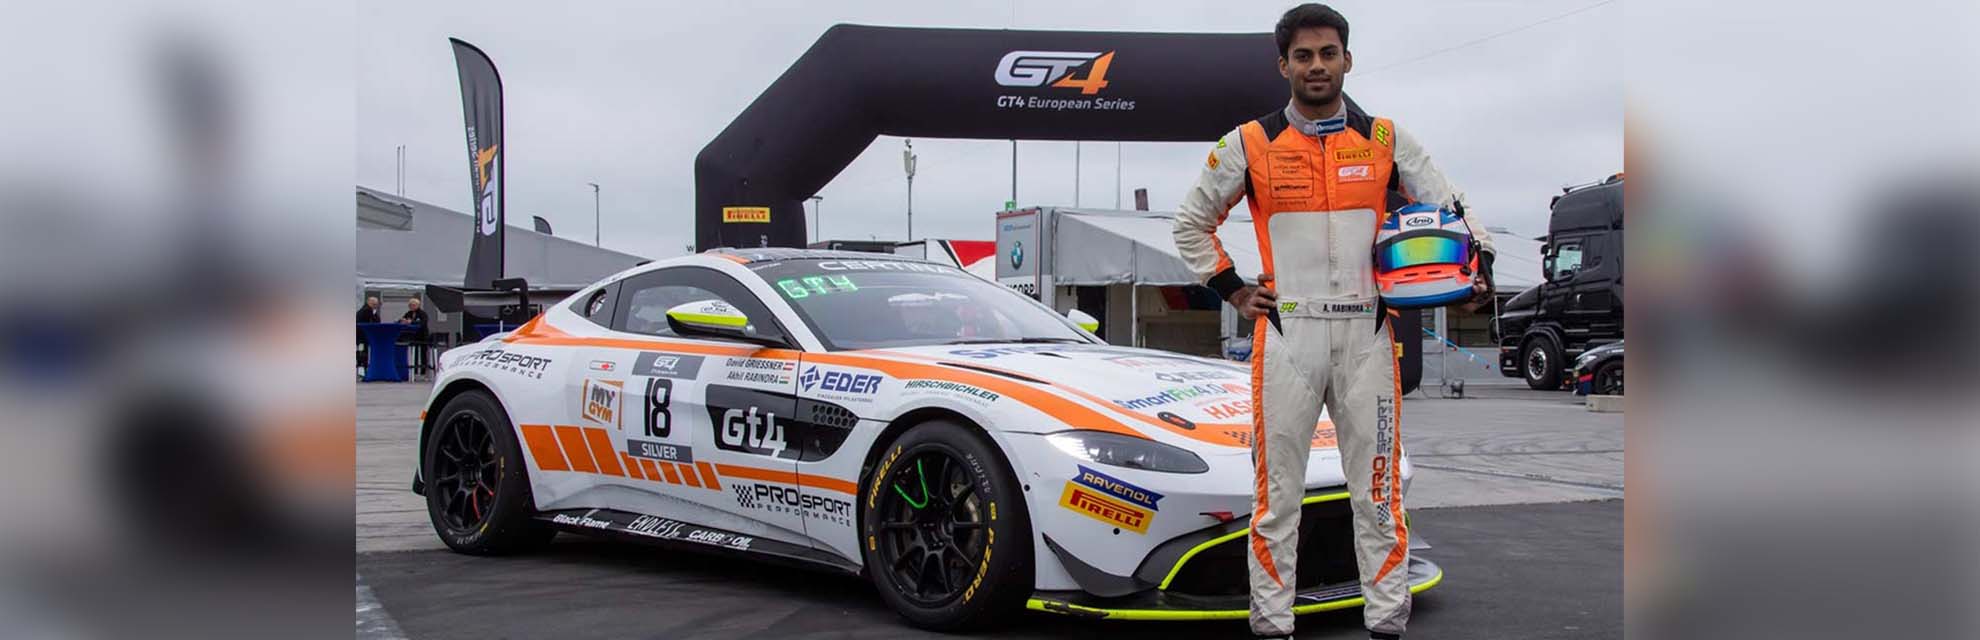 Van karten tot GT4 European Series: de Indiase racer Akhil Rabindra rijdt naar de overwinning